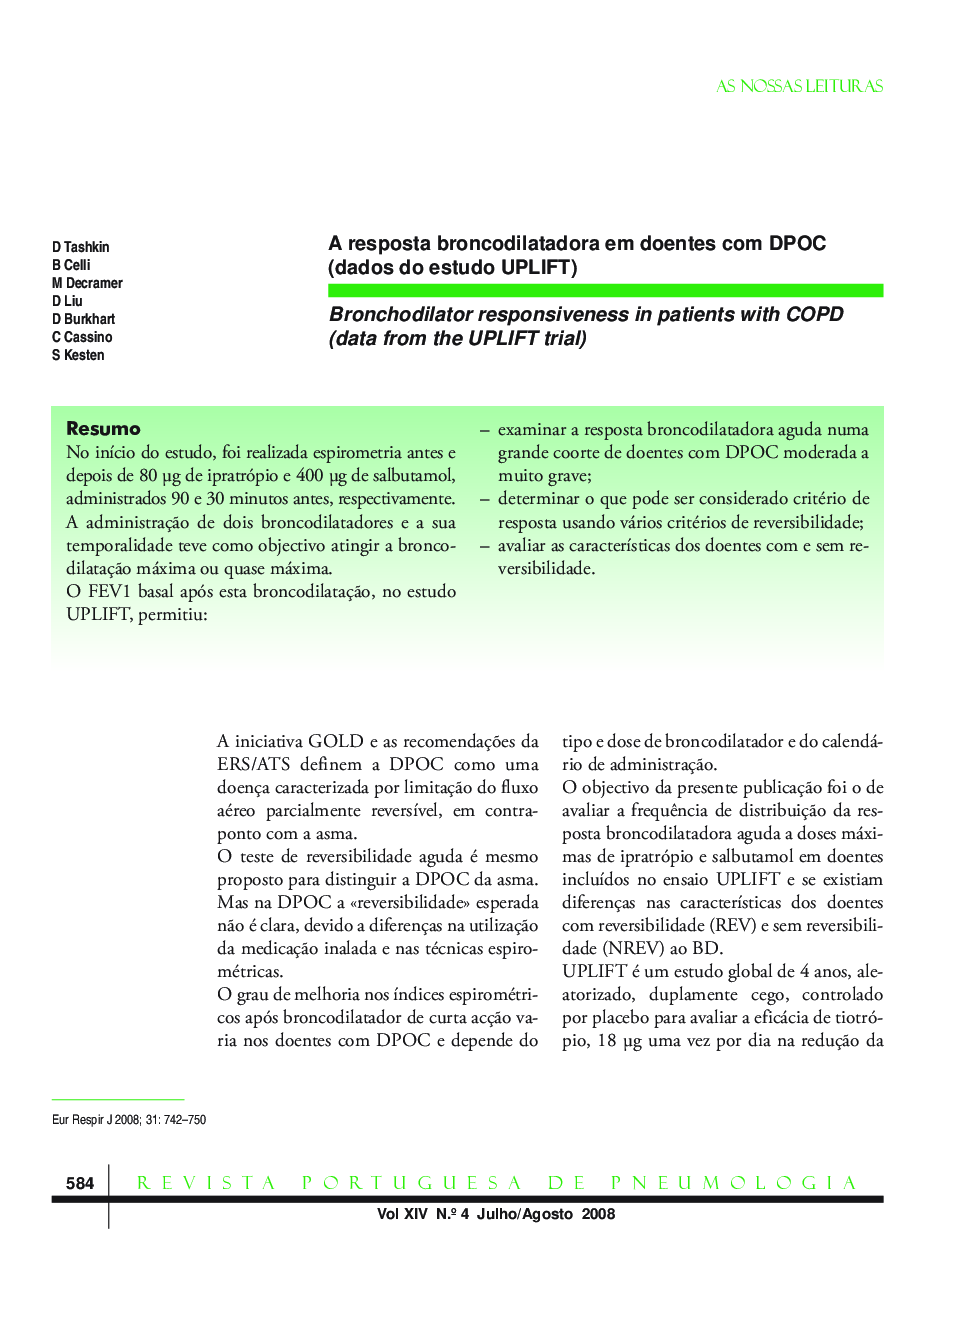 A resposta broncodilatadora em doentes com DPOC (dados do estudo UPLIFT)